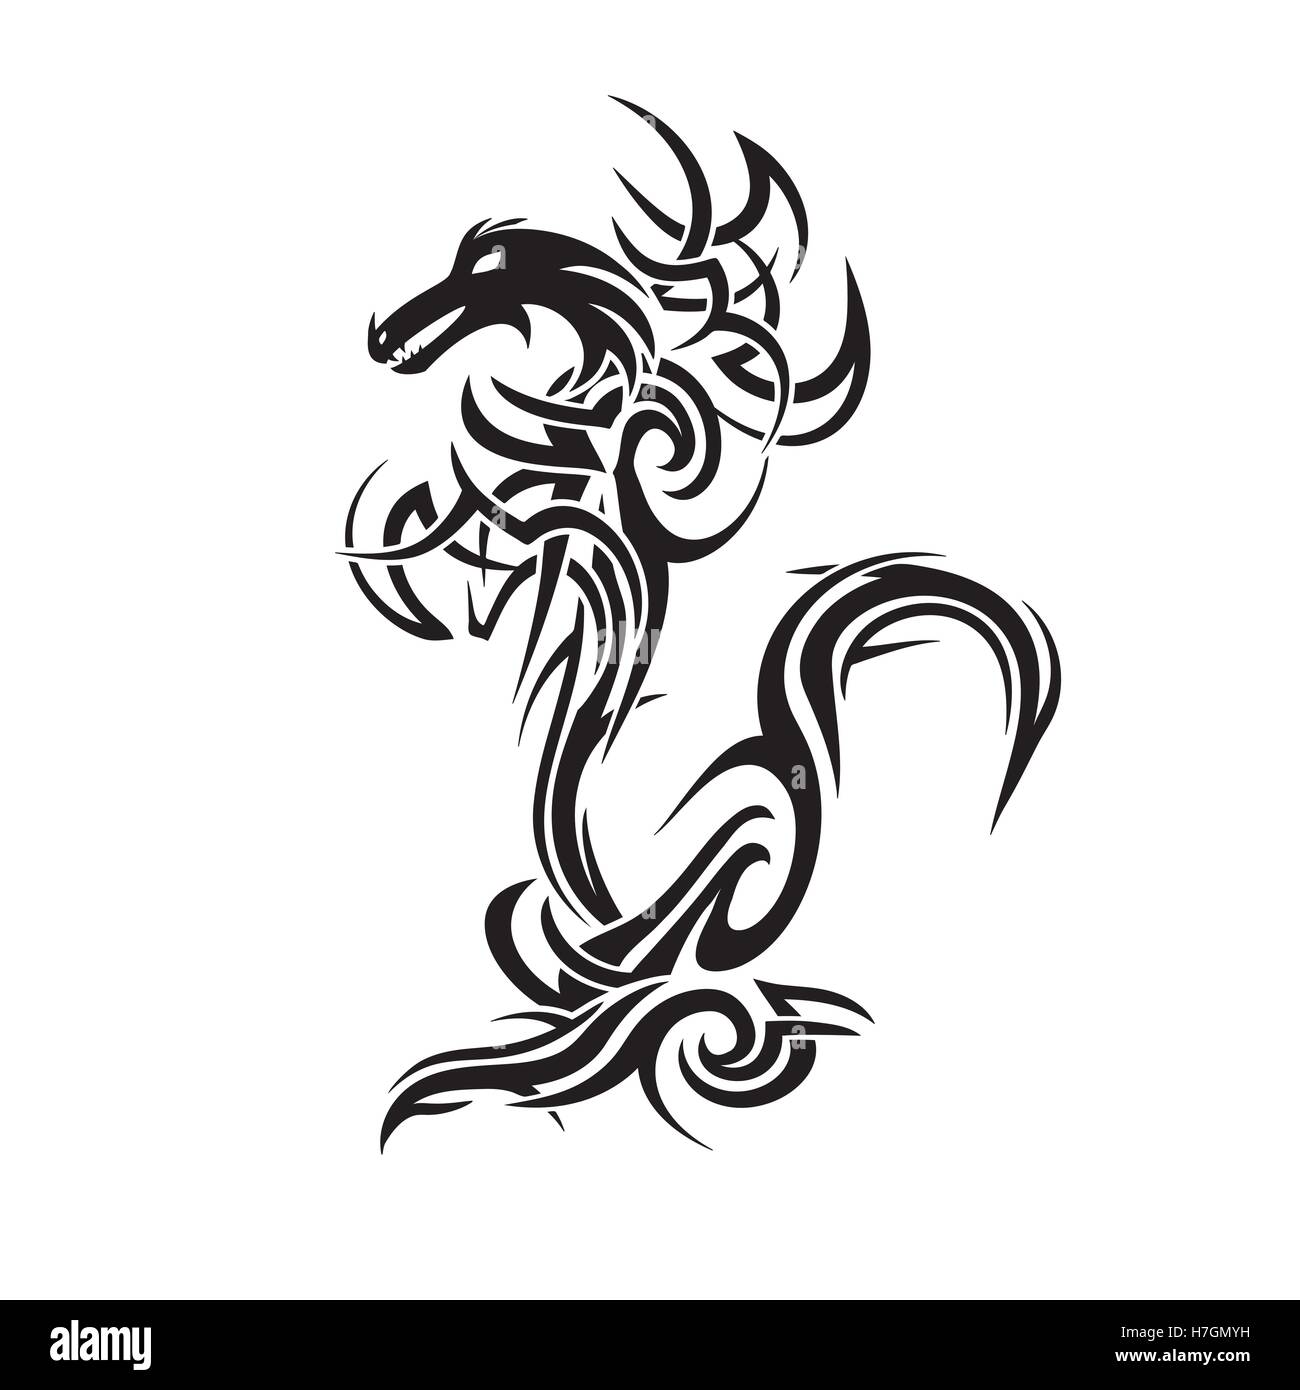 tribal dragon tattoo art vector illustration Stock Vector